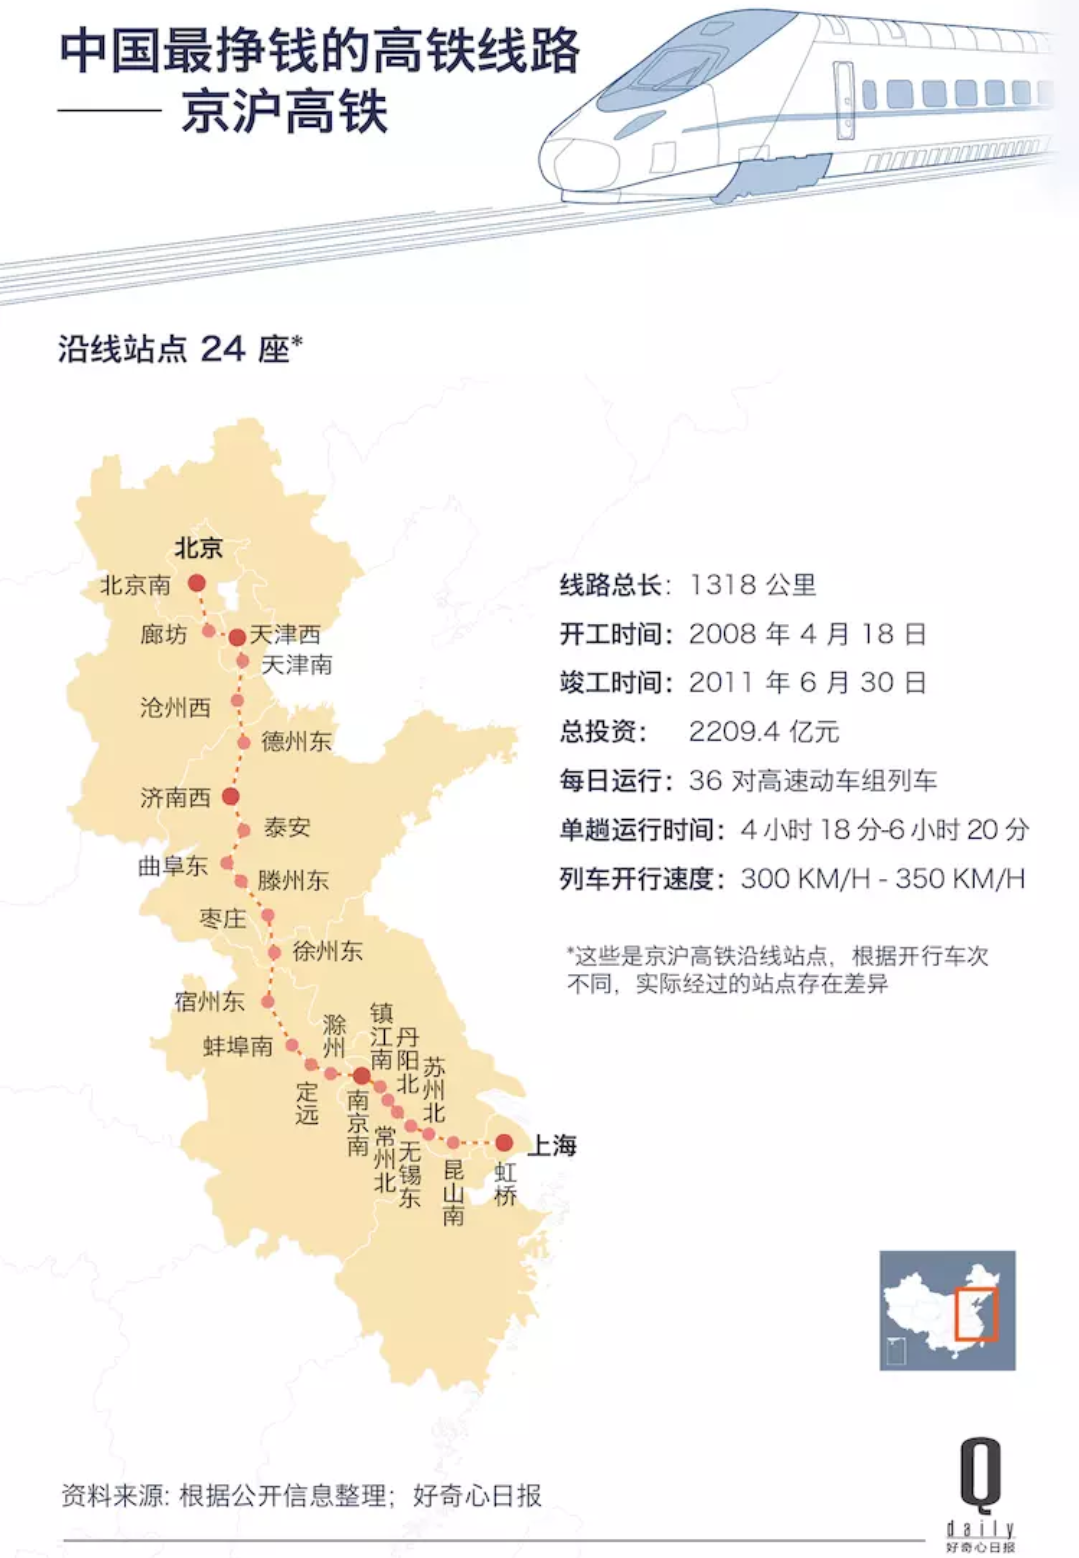 一年运1.6亿人的京沪高铁准备上市  算下来每张票盈利79元 